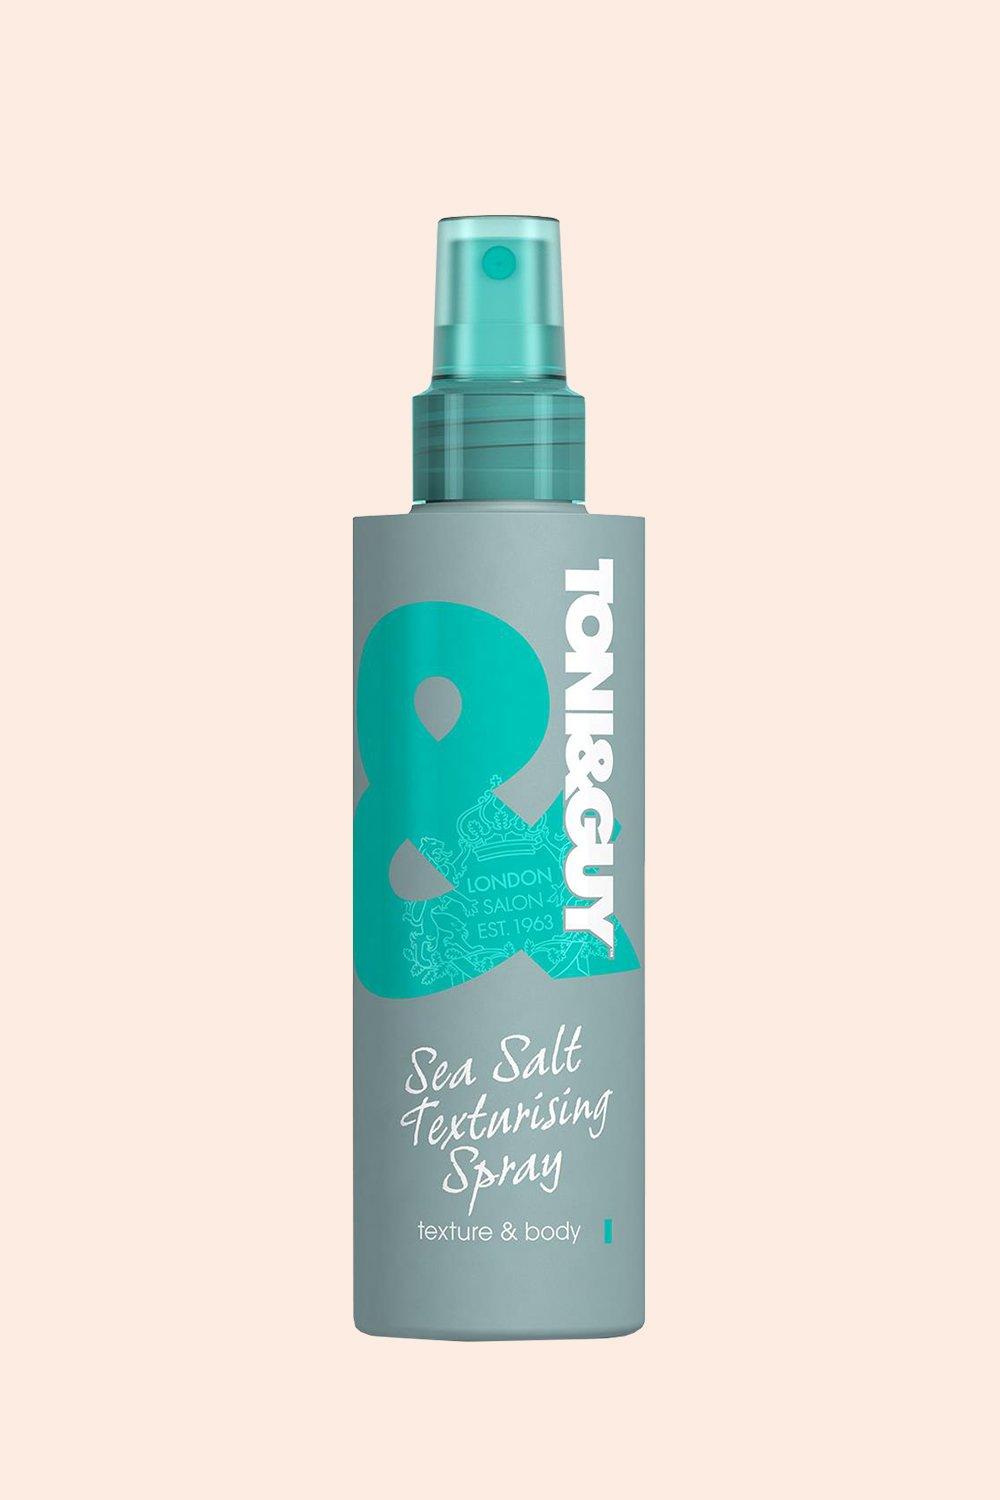 Sea salt texturising spray for hair care, 200ml